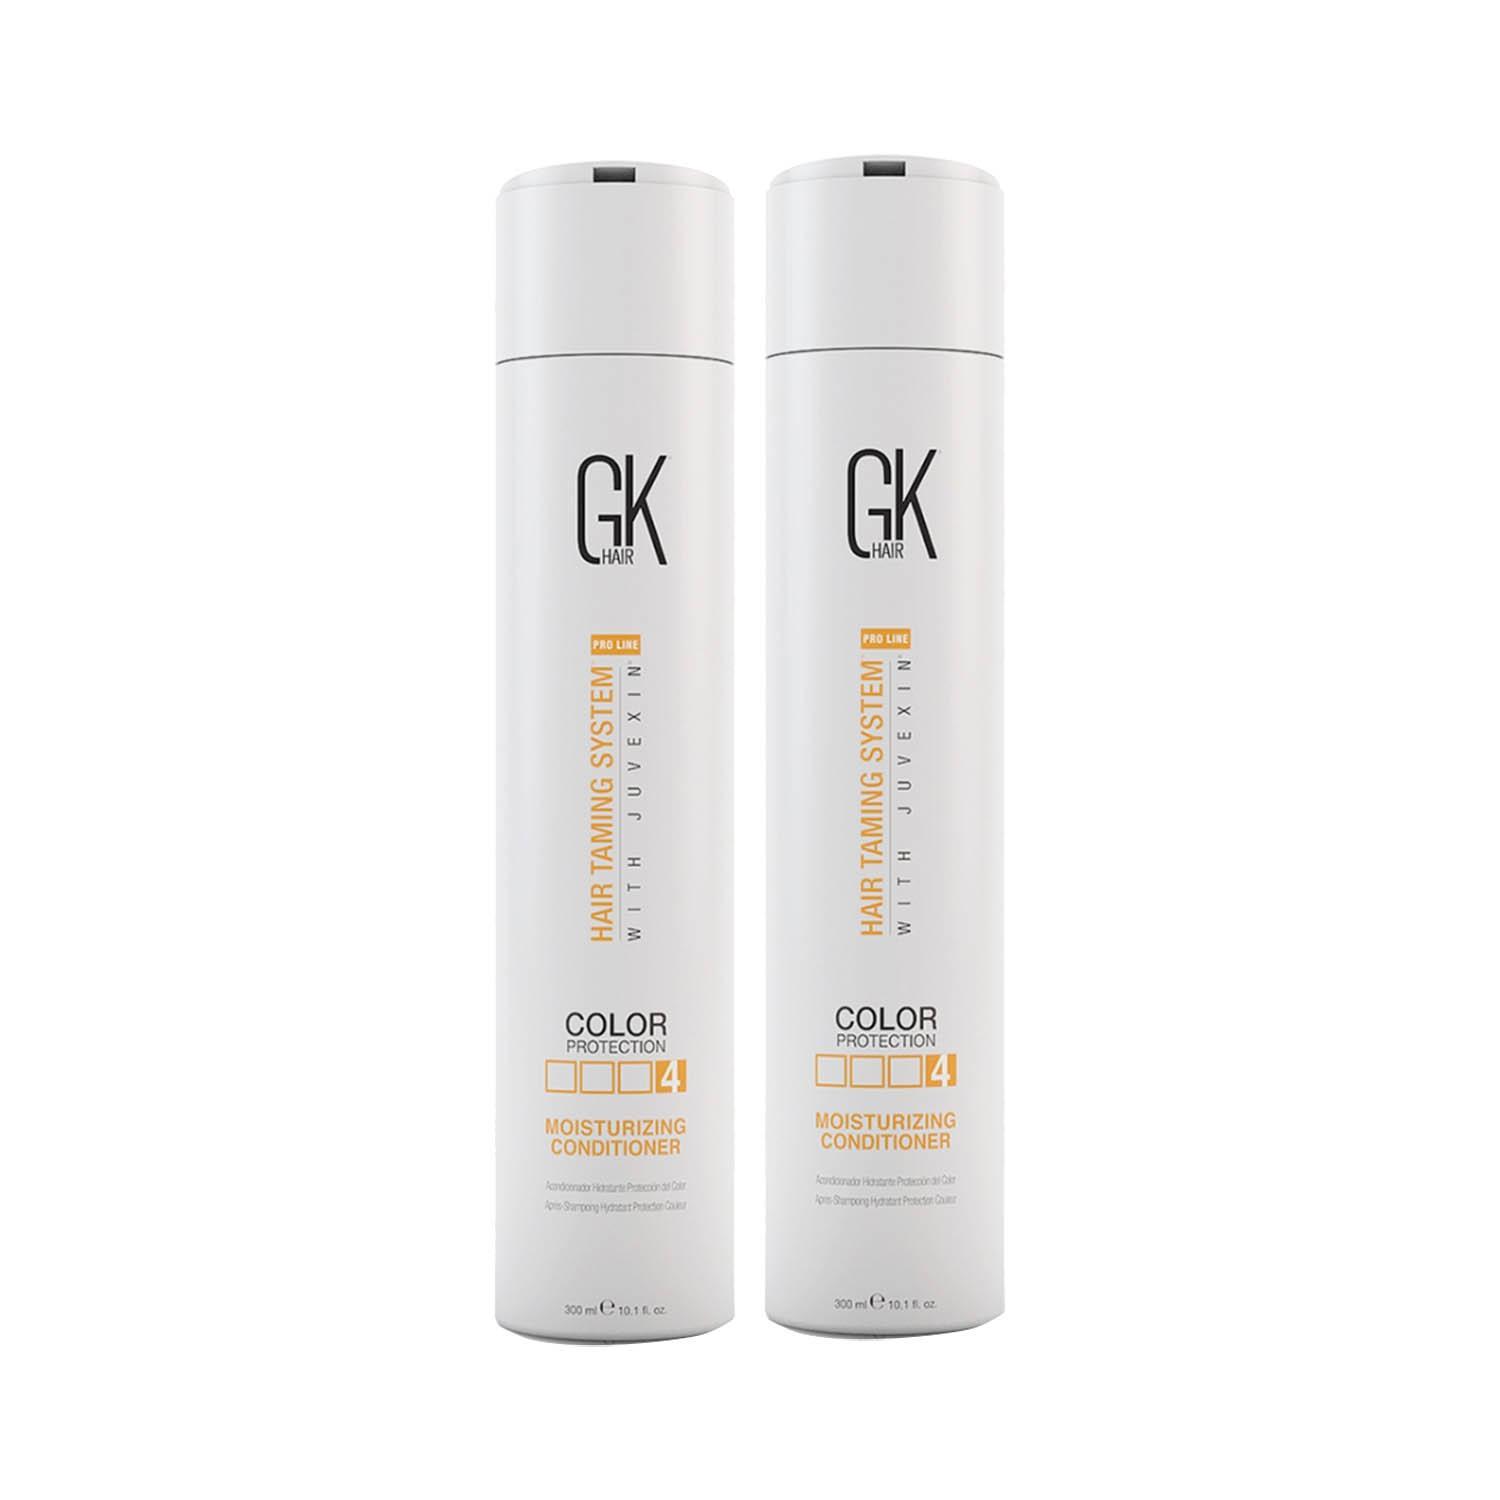 gk hair moisturizing conditioner 300ml pack of 2